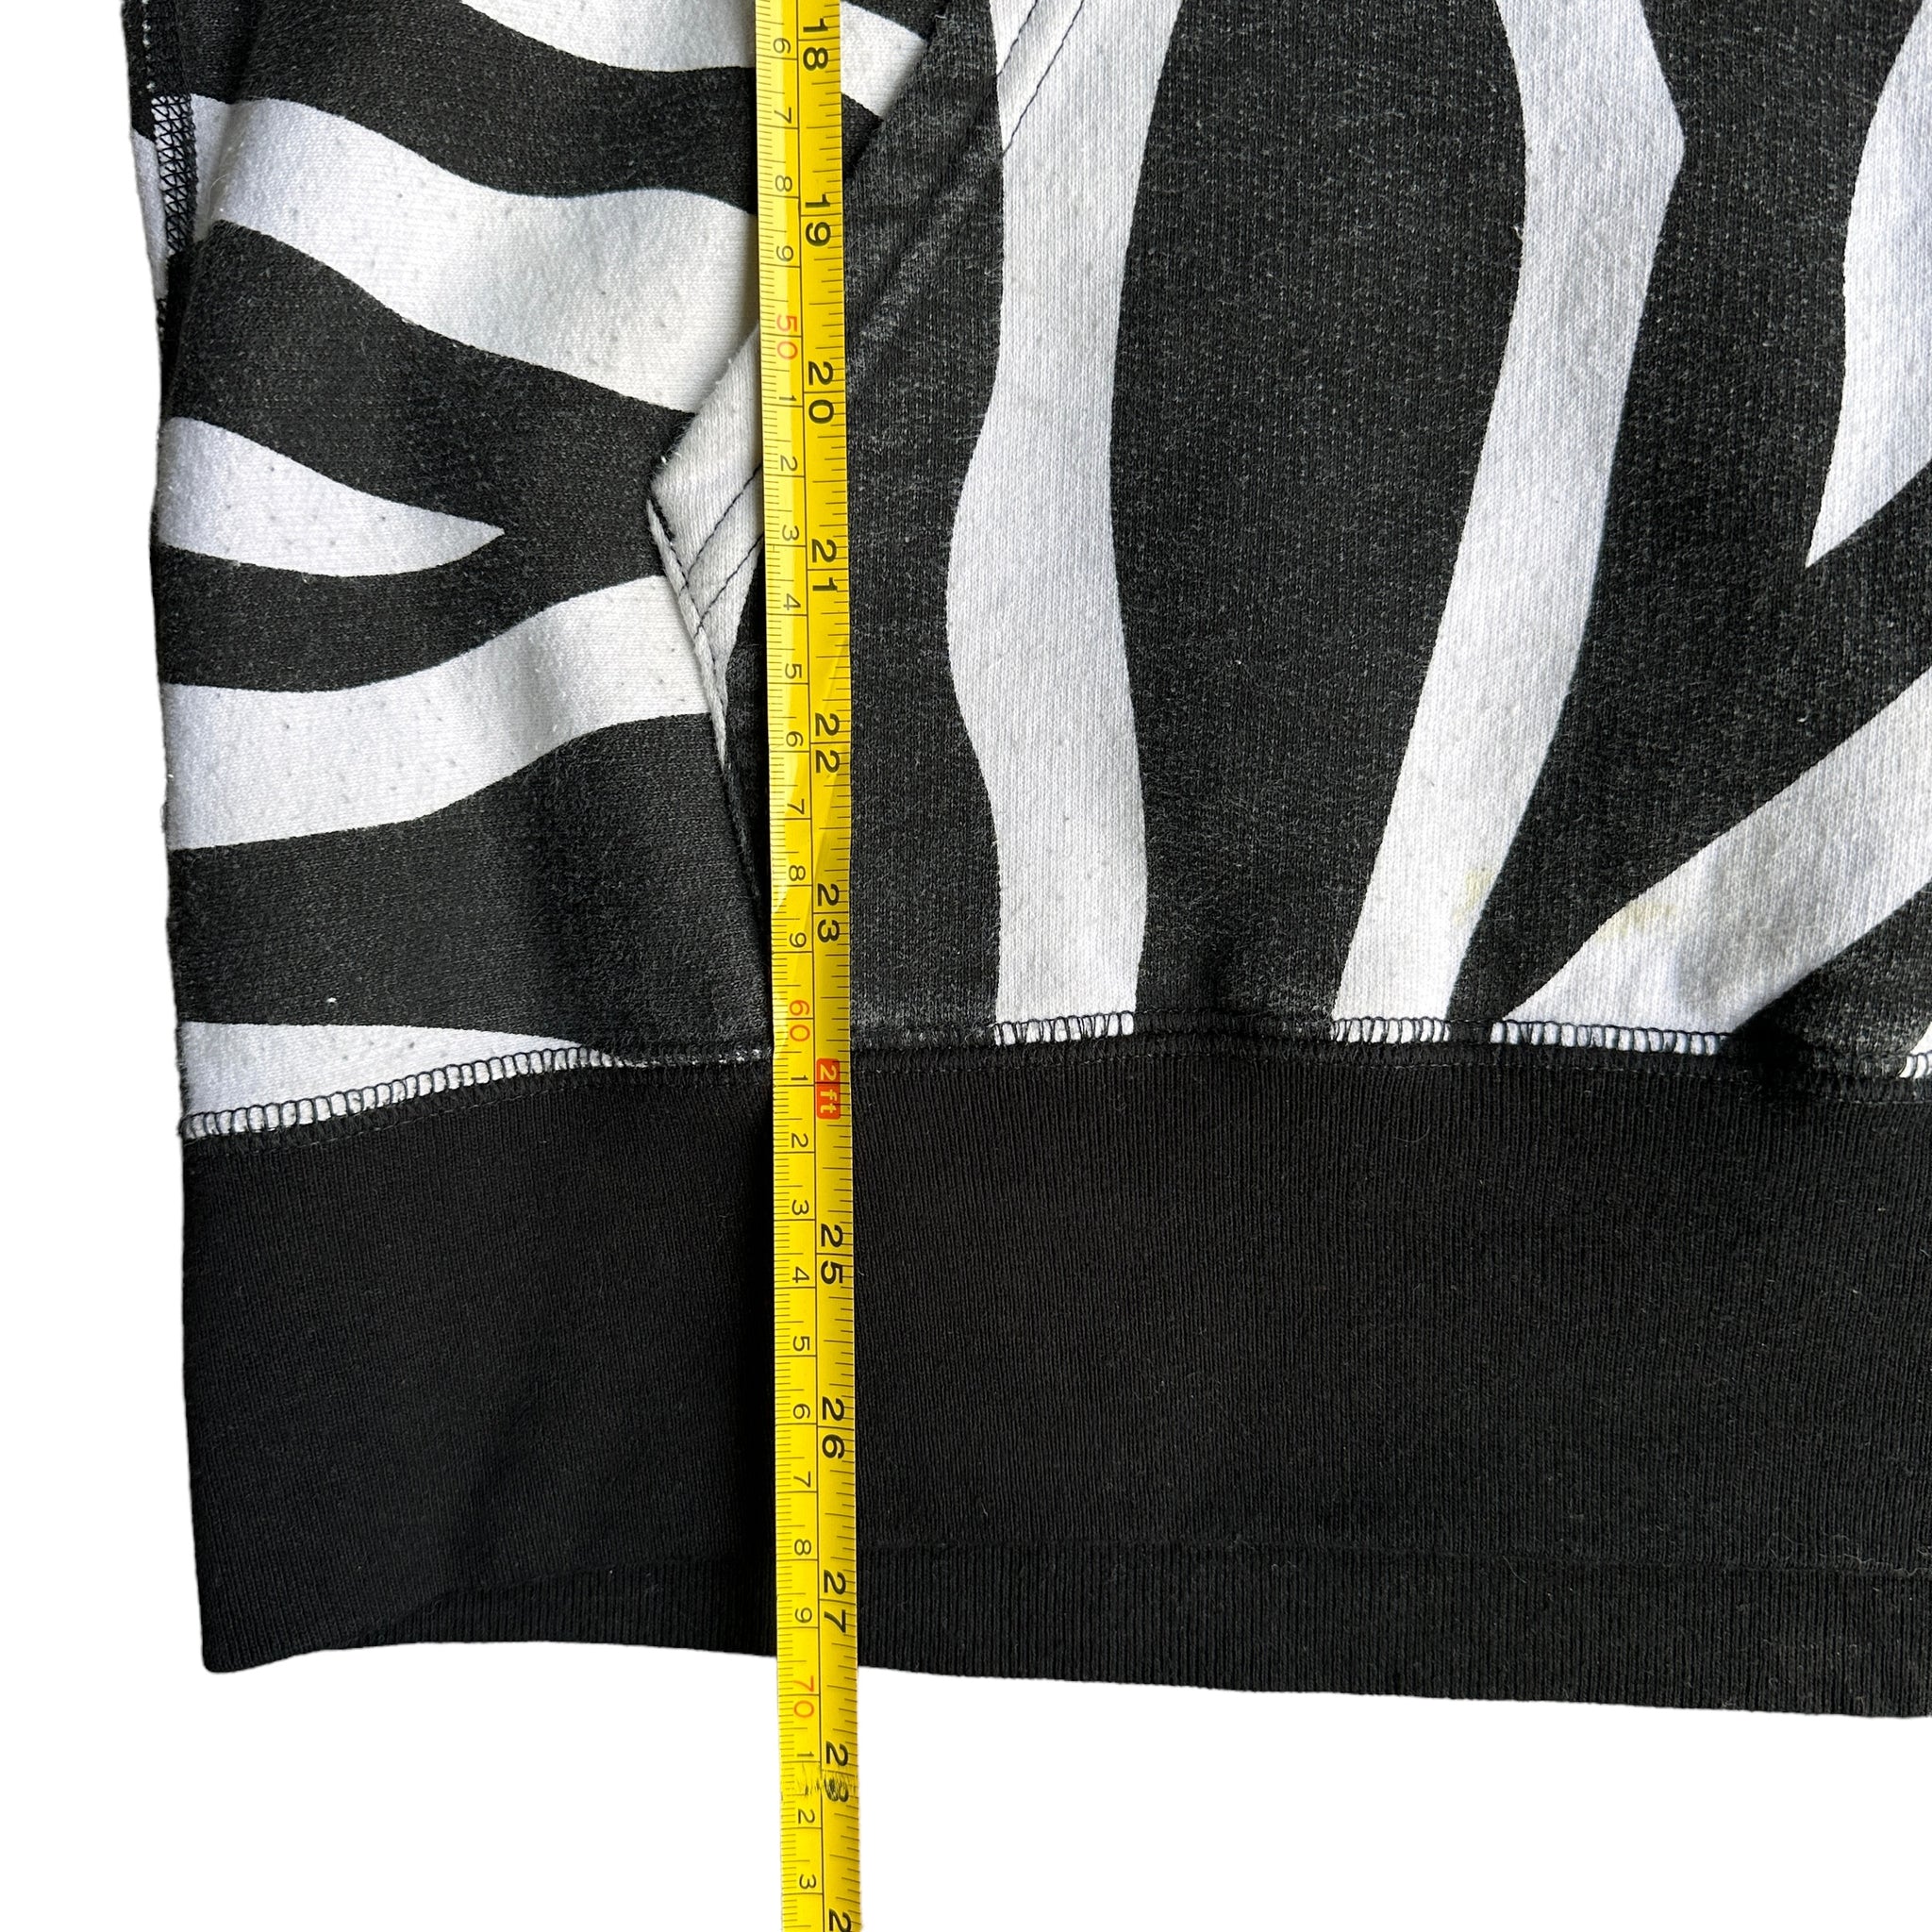 Noah core logo zebra bad hoodie medium